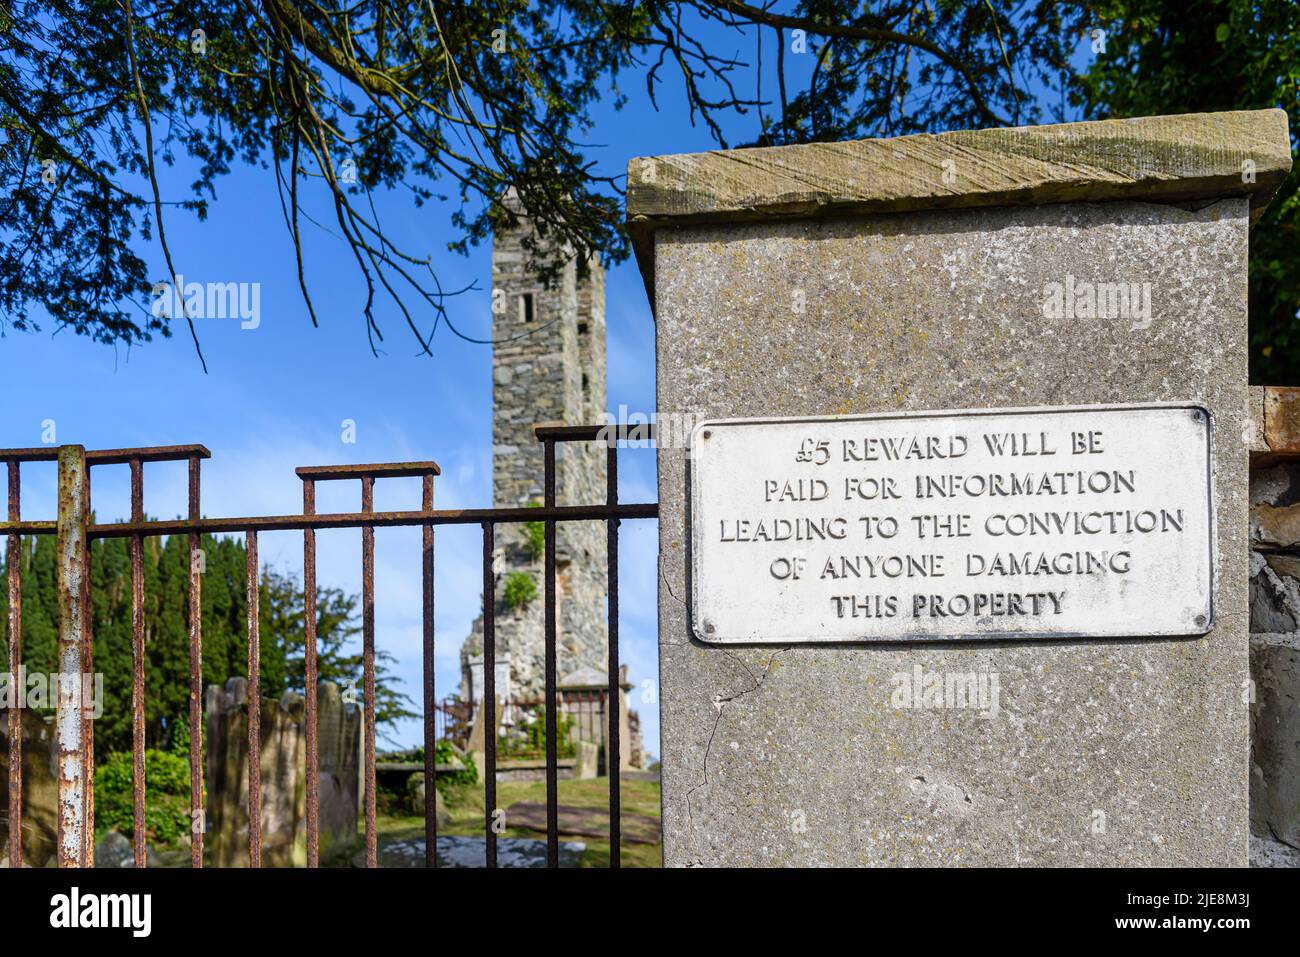 Ein gusseisernes Schild am Pfosten vor einer Kirche in Portaferry, das eine Belohnung von £5 für Informationen anbietet, die zur Verurteilung von Personen führen, die Schaden anrichten Stockfoto